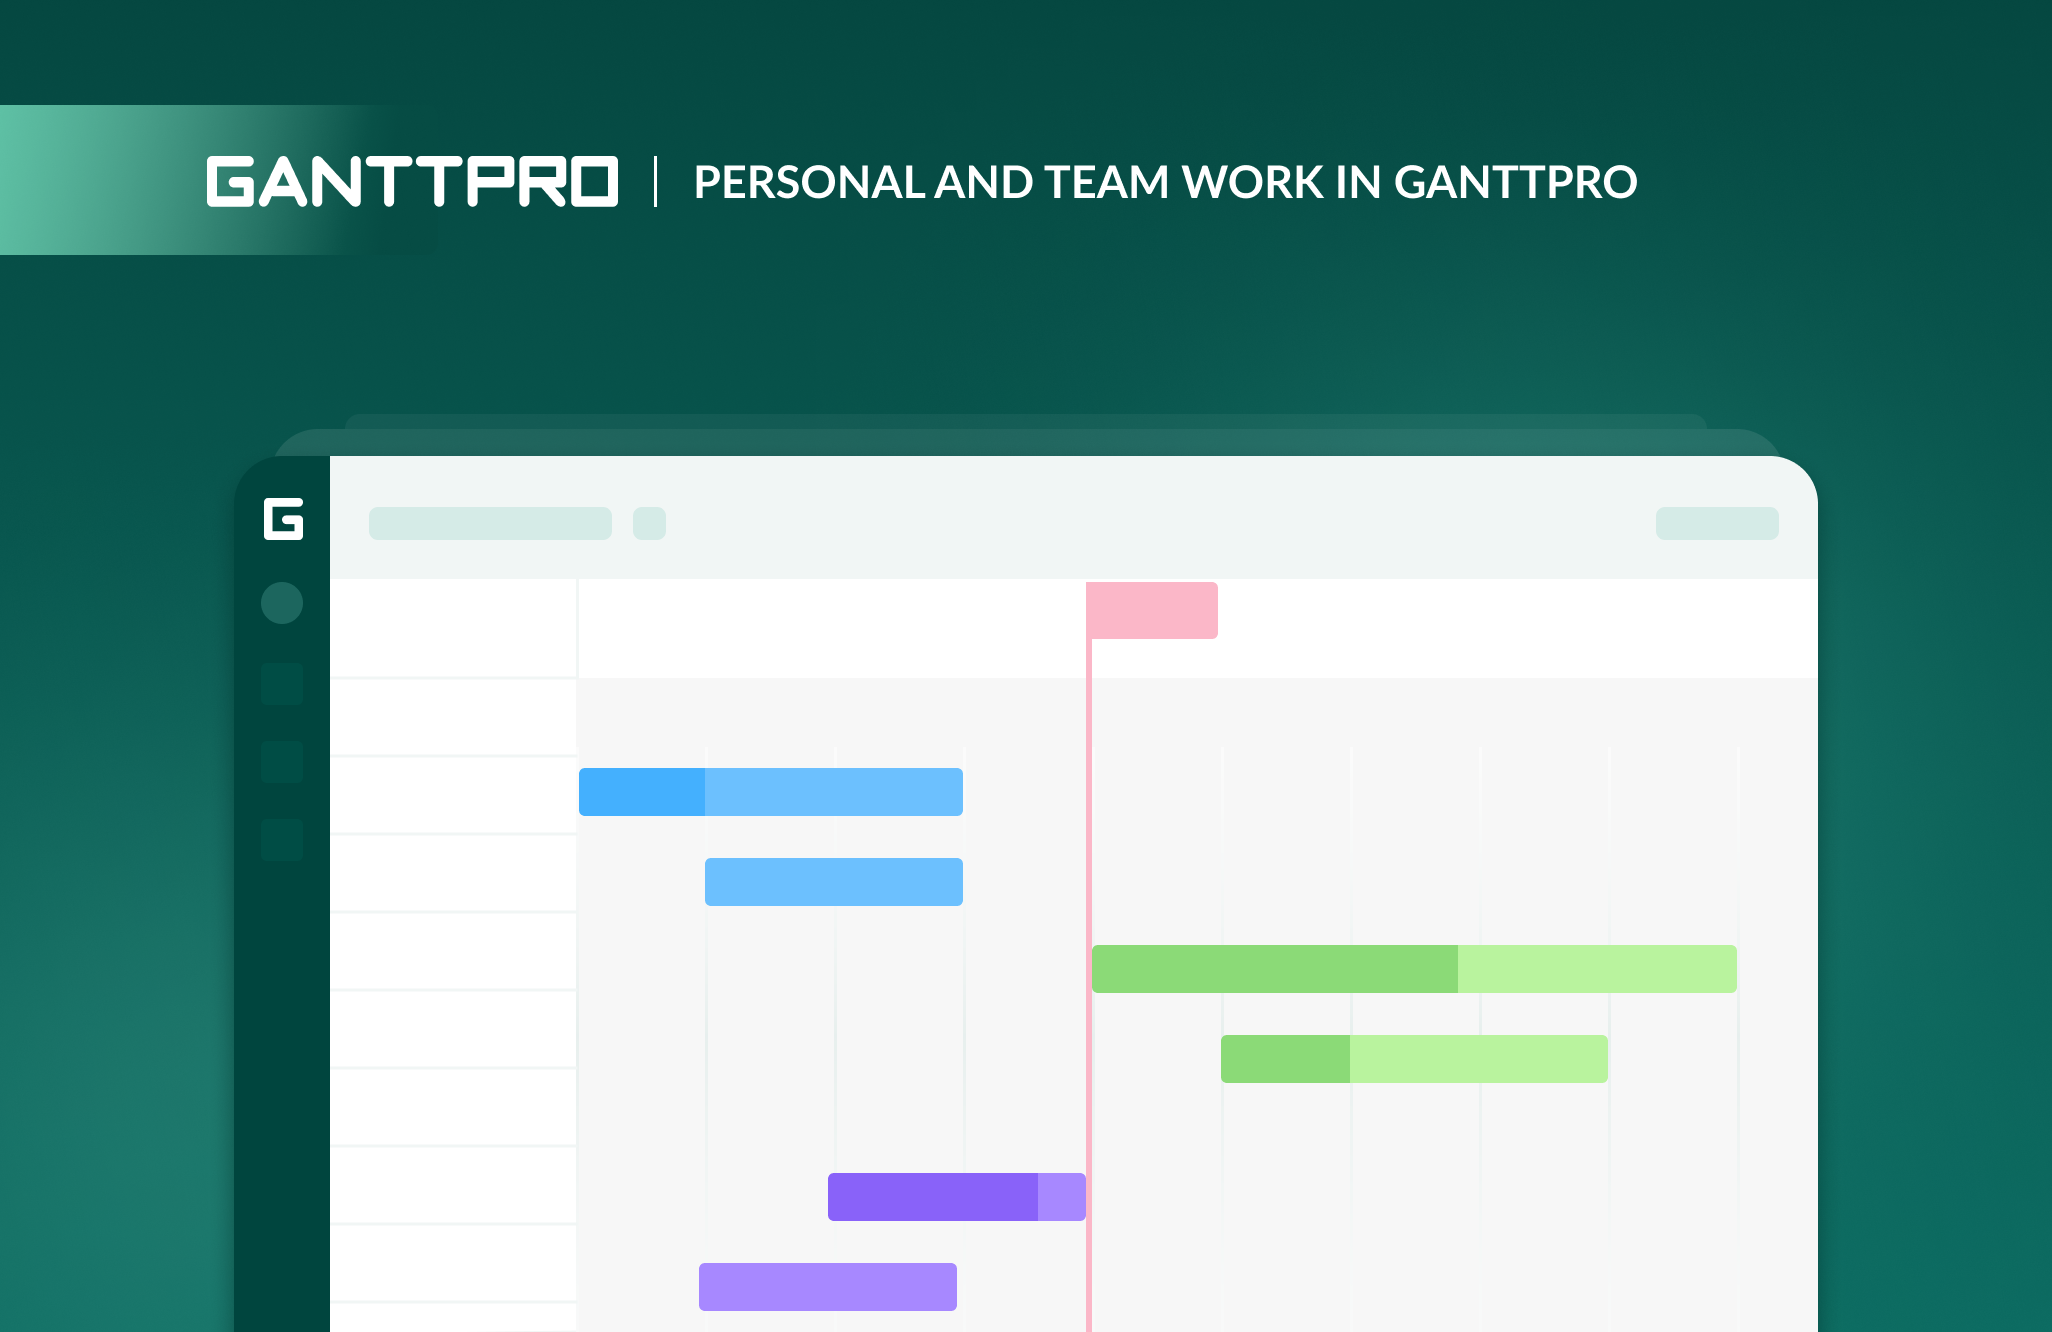 Personal and teamwork in GanttPRO